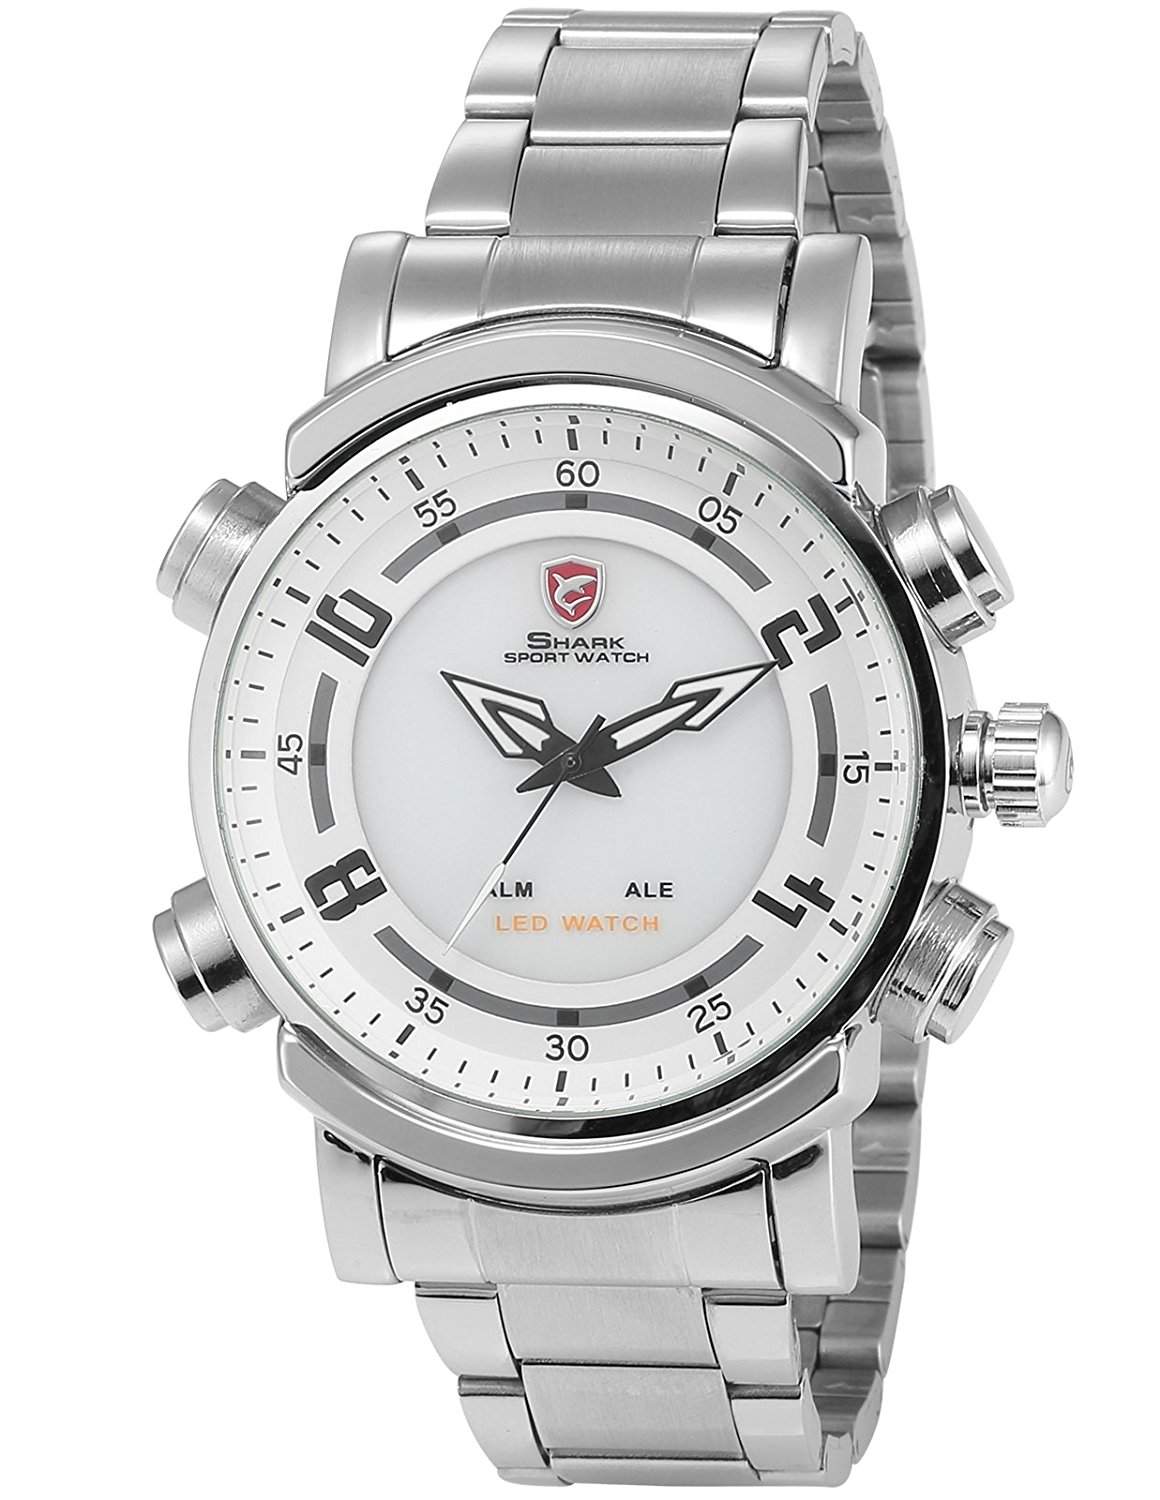 Shark Dual LED Digital Analog Armbanduhr XL Edelstahl Uhrband SH062